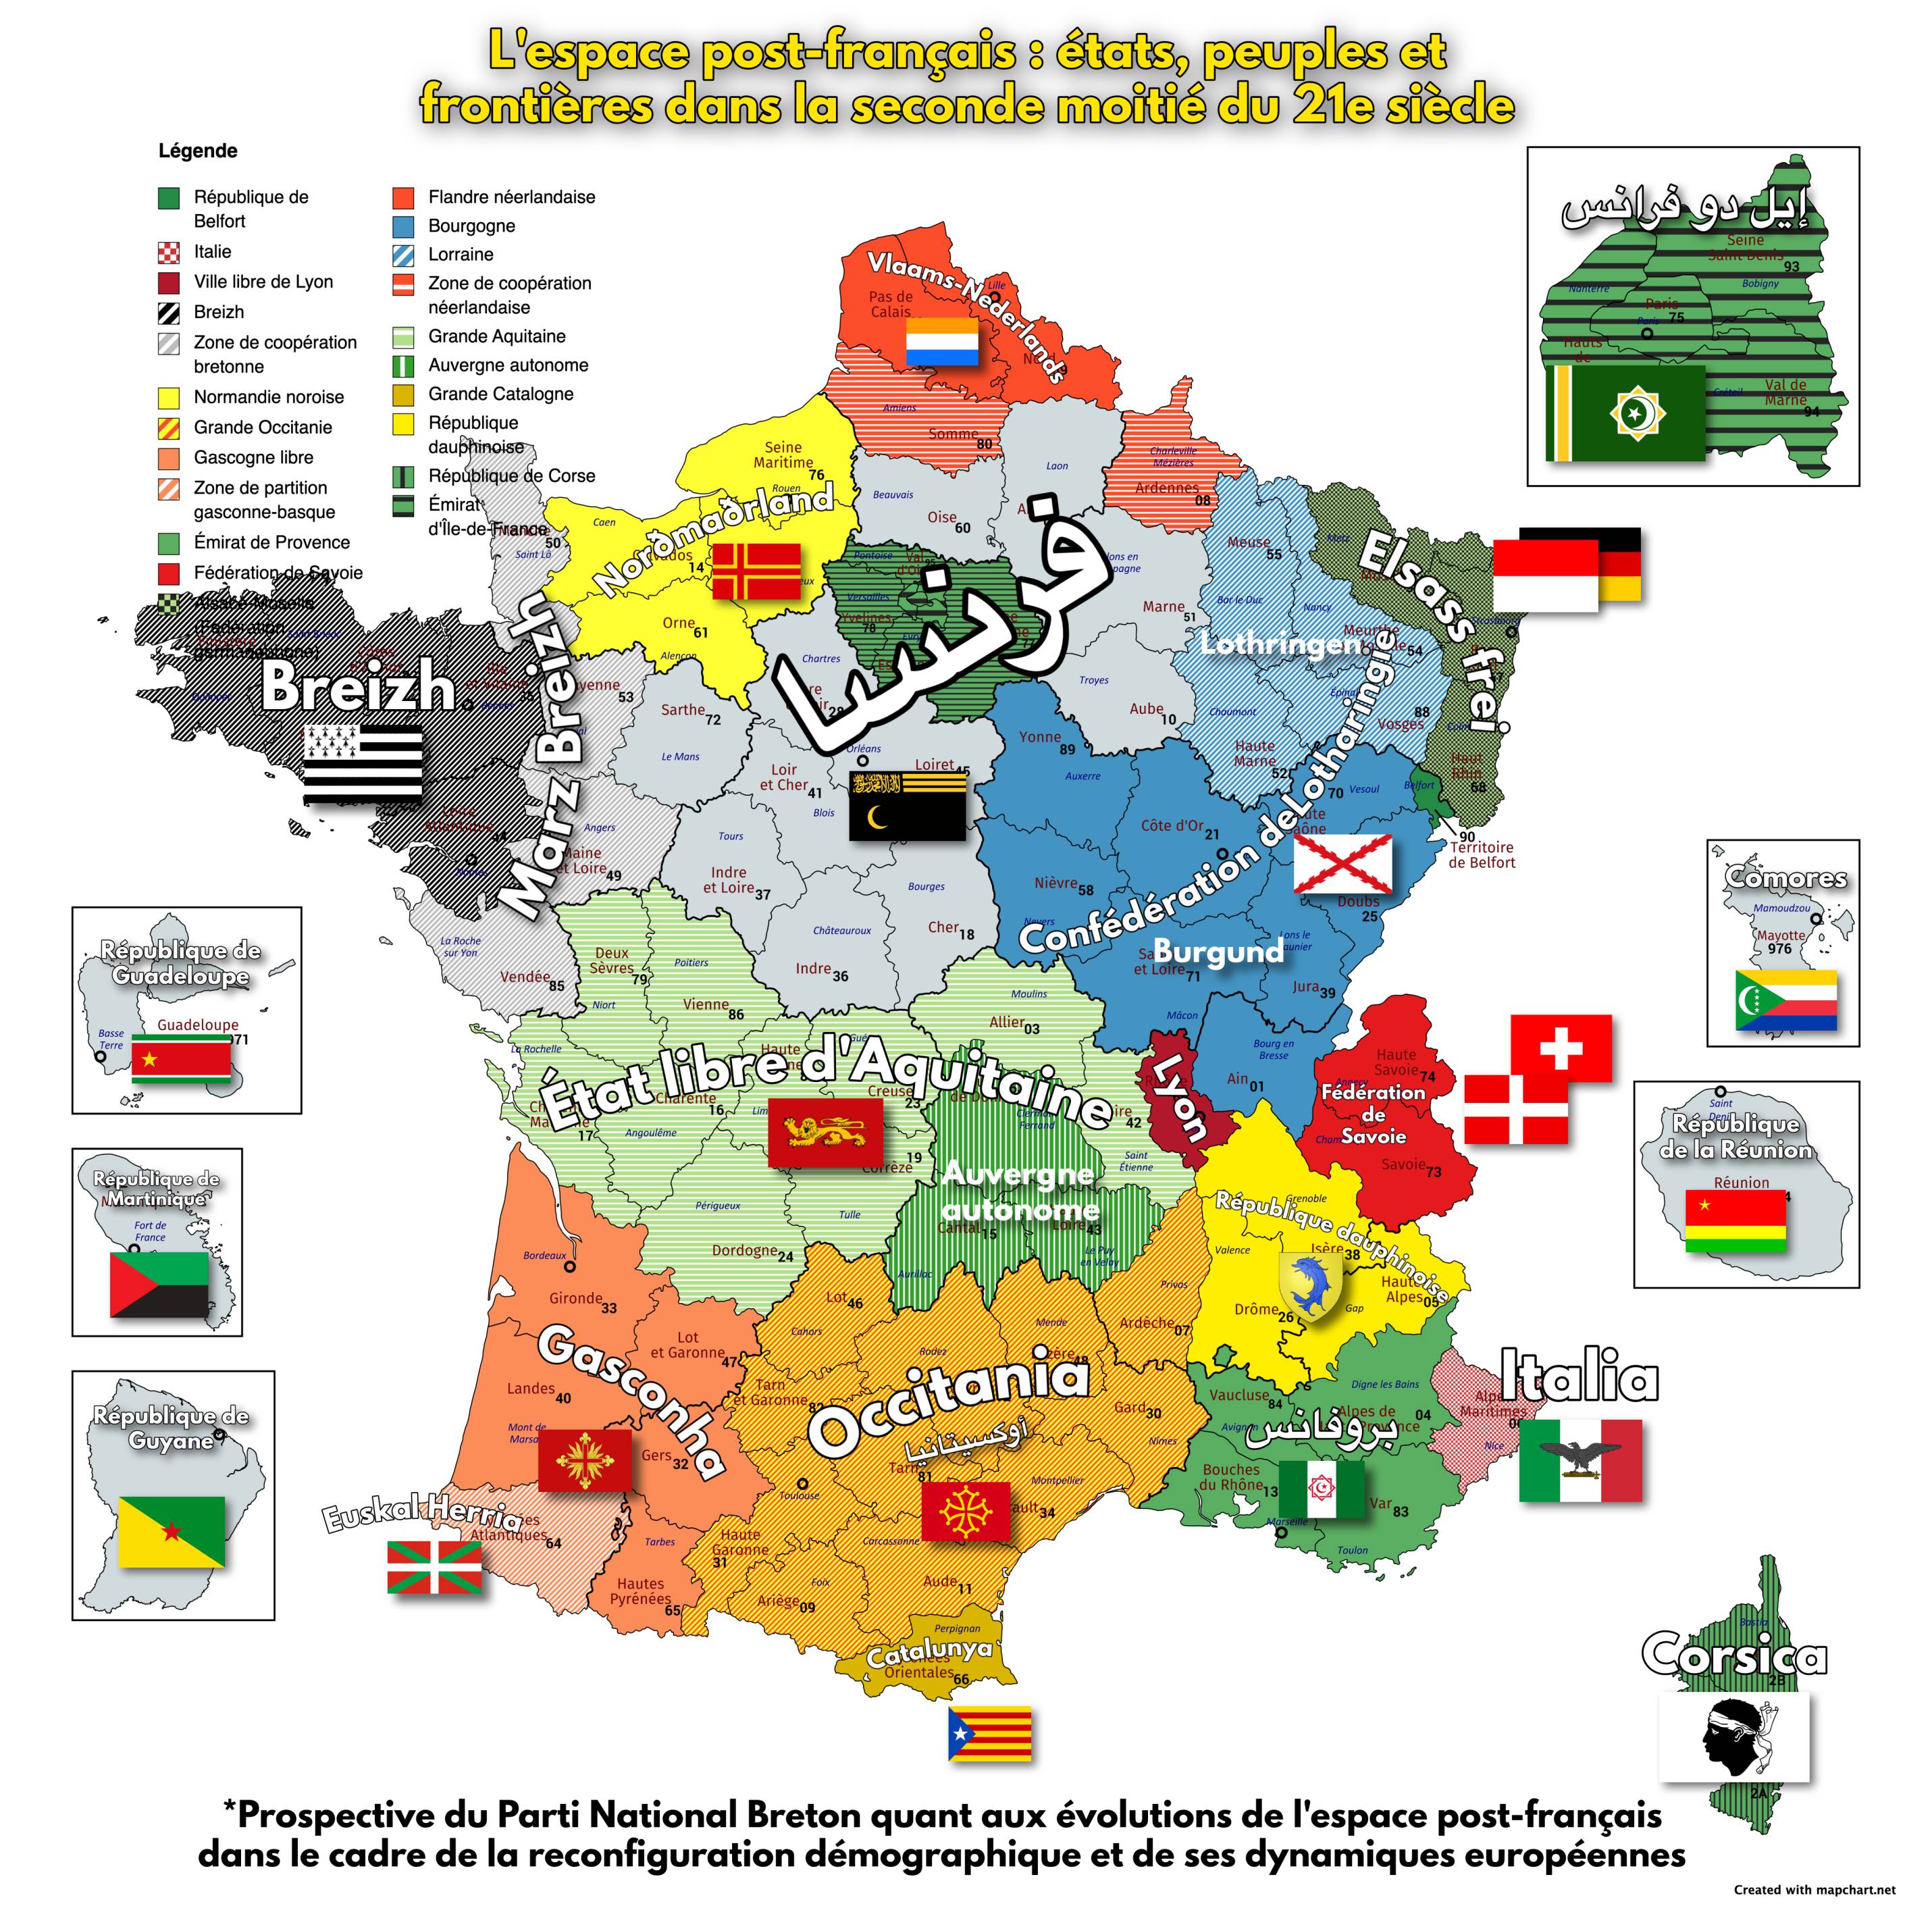 Carte d’orientation stratégique du PNB portant sur la décolonisation de l’espace post-français